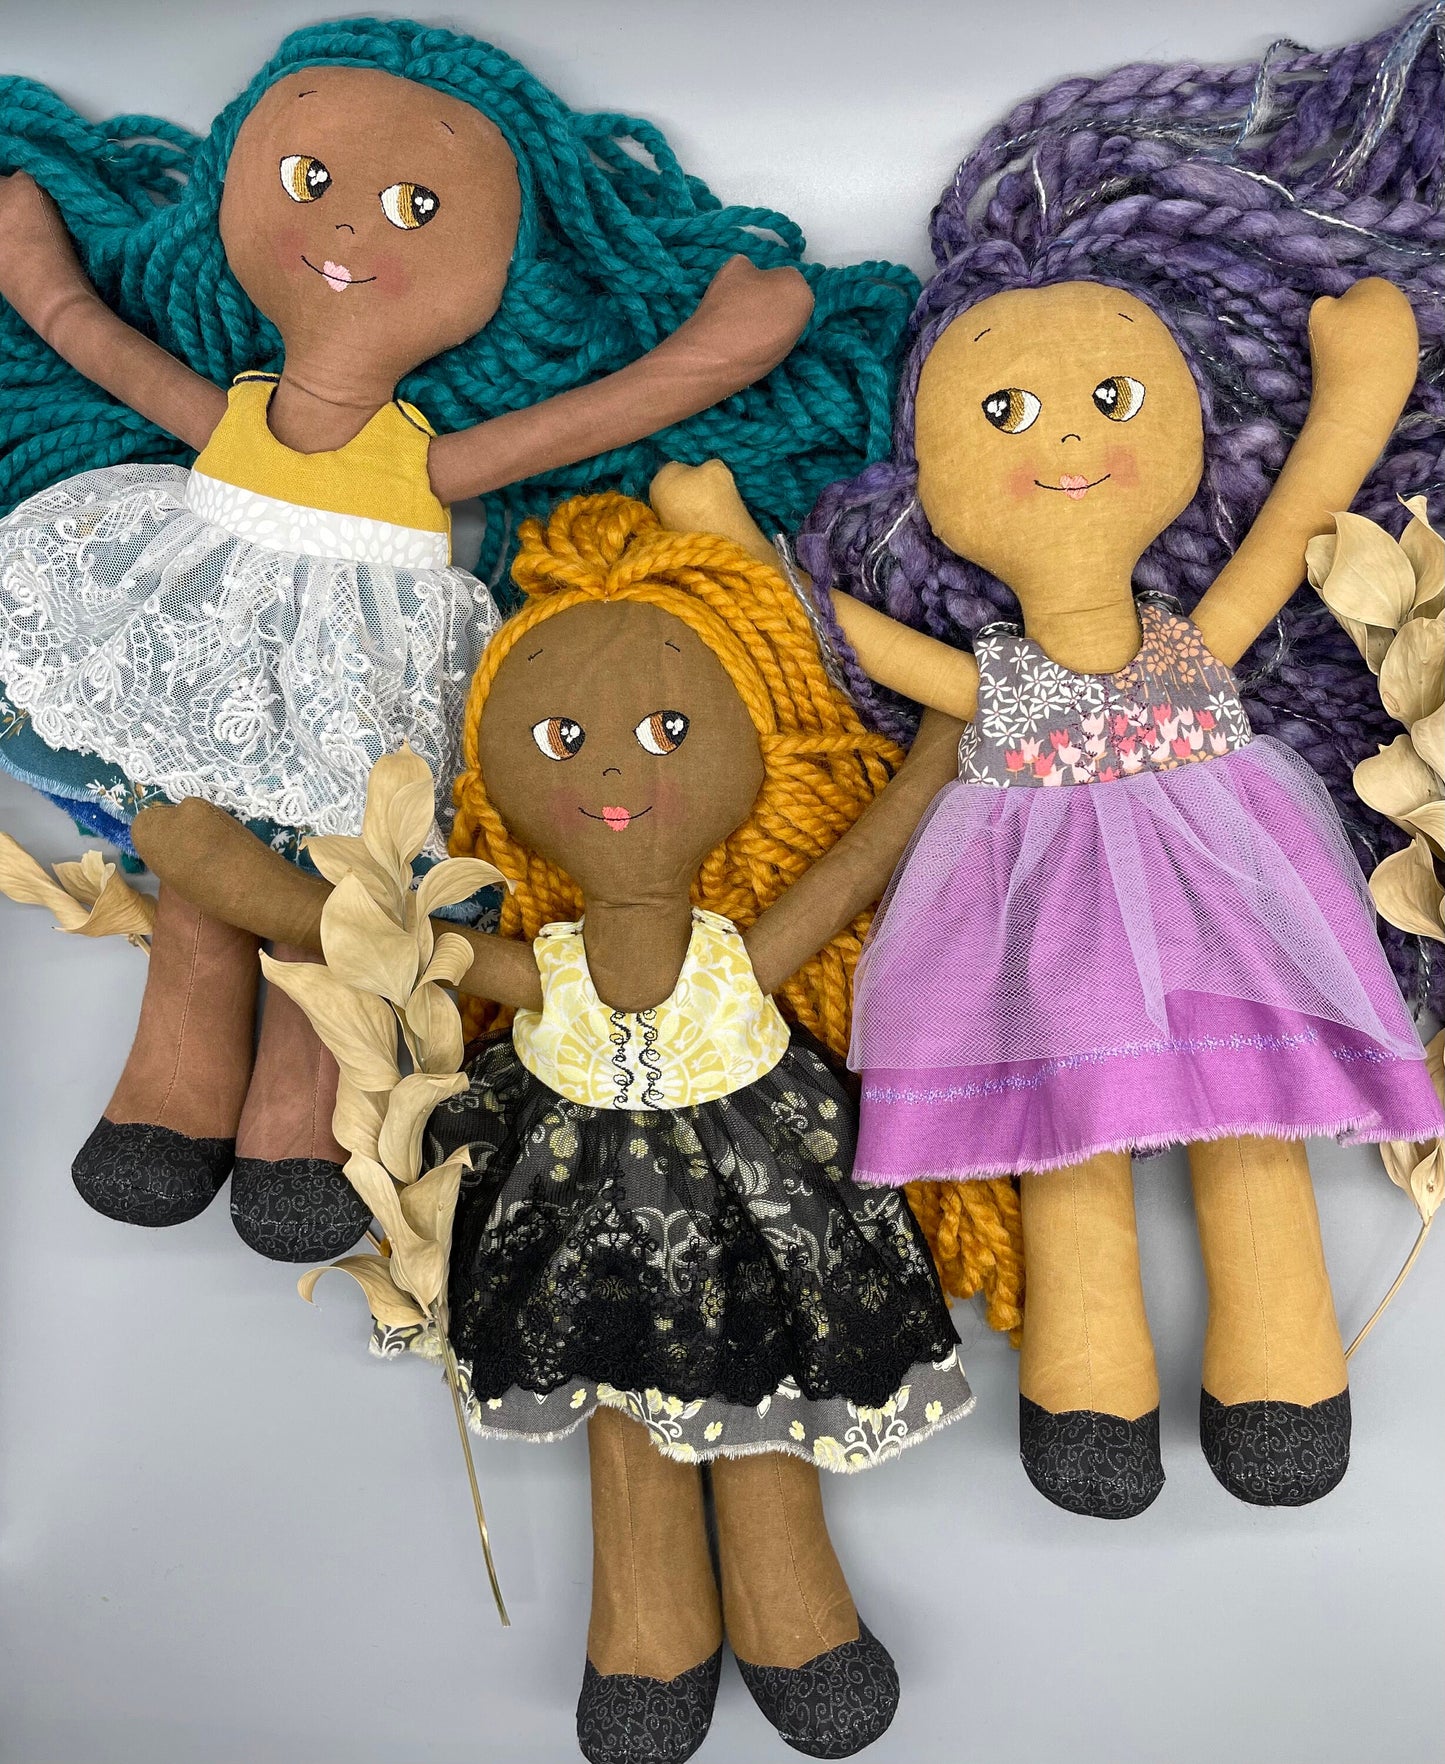 Handmade Black Doll, "CLOE", Reversible clothing, handmade gift, cloth doll, fabric doll, black doll, diverse doll, heirloom doll, Brown Muslin, teal